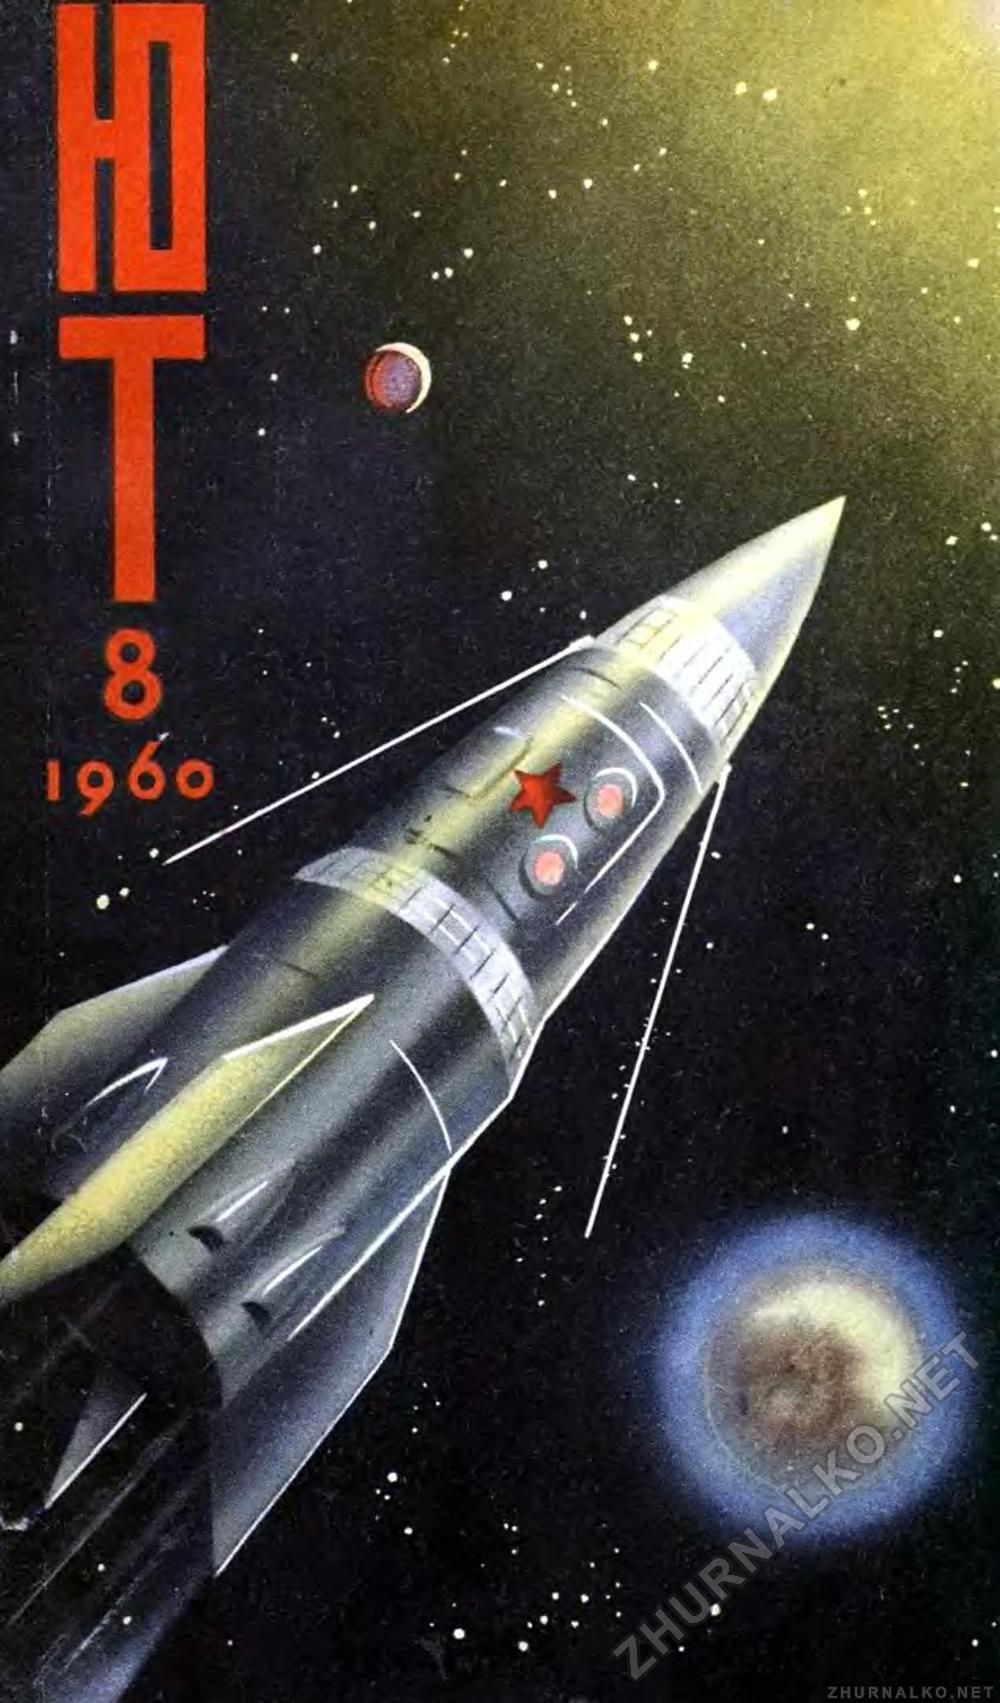   1960-08,  1